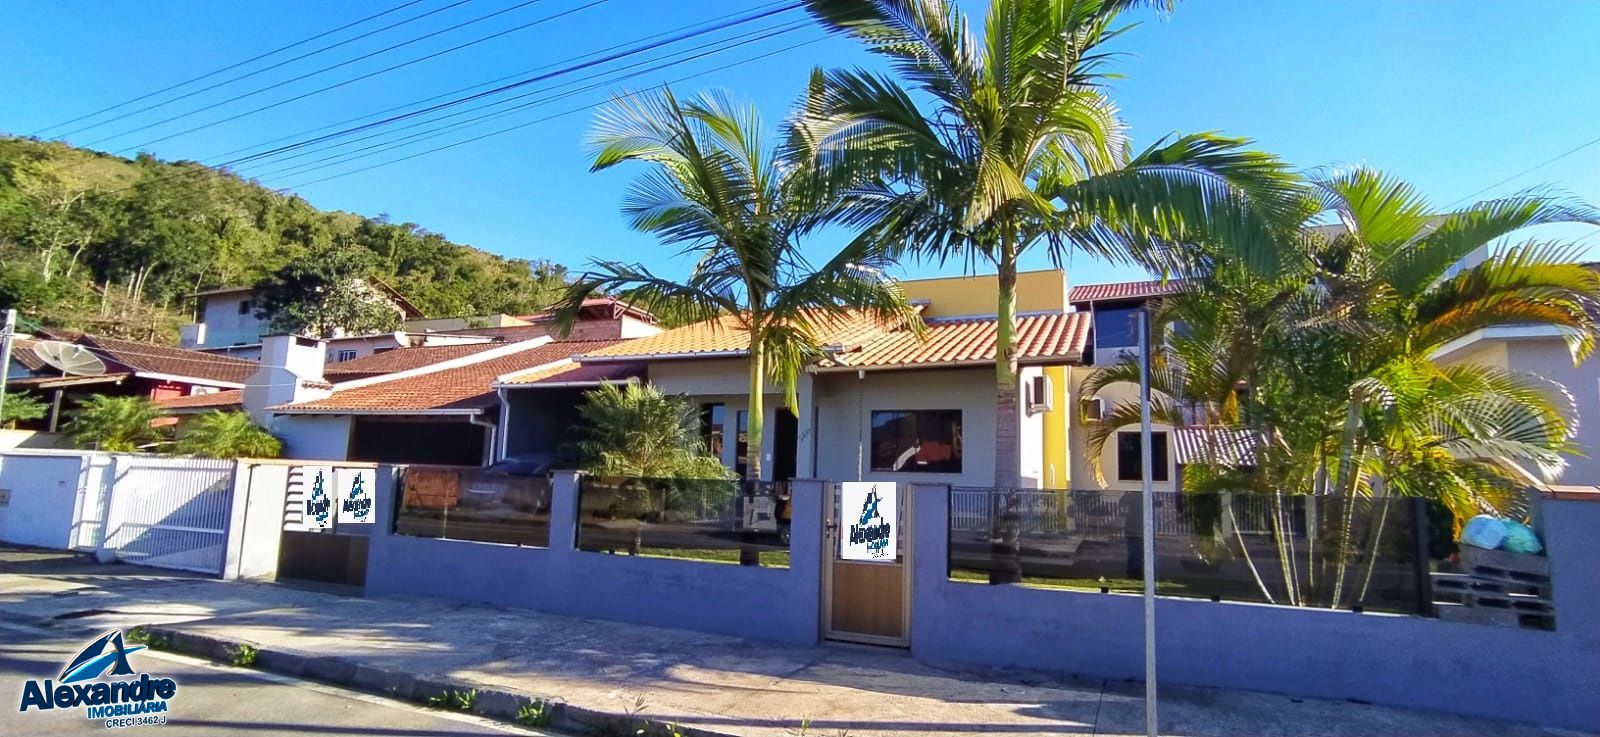 Casa  venda  no Estrada Nova - Jaragu do Sul, SC. Imveis